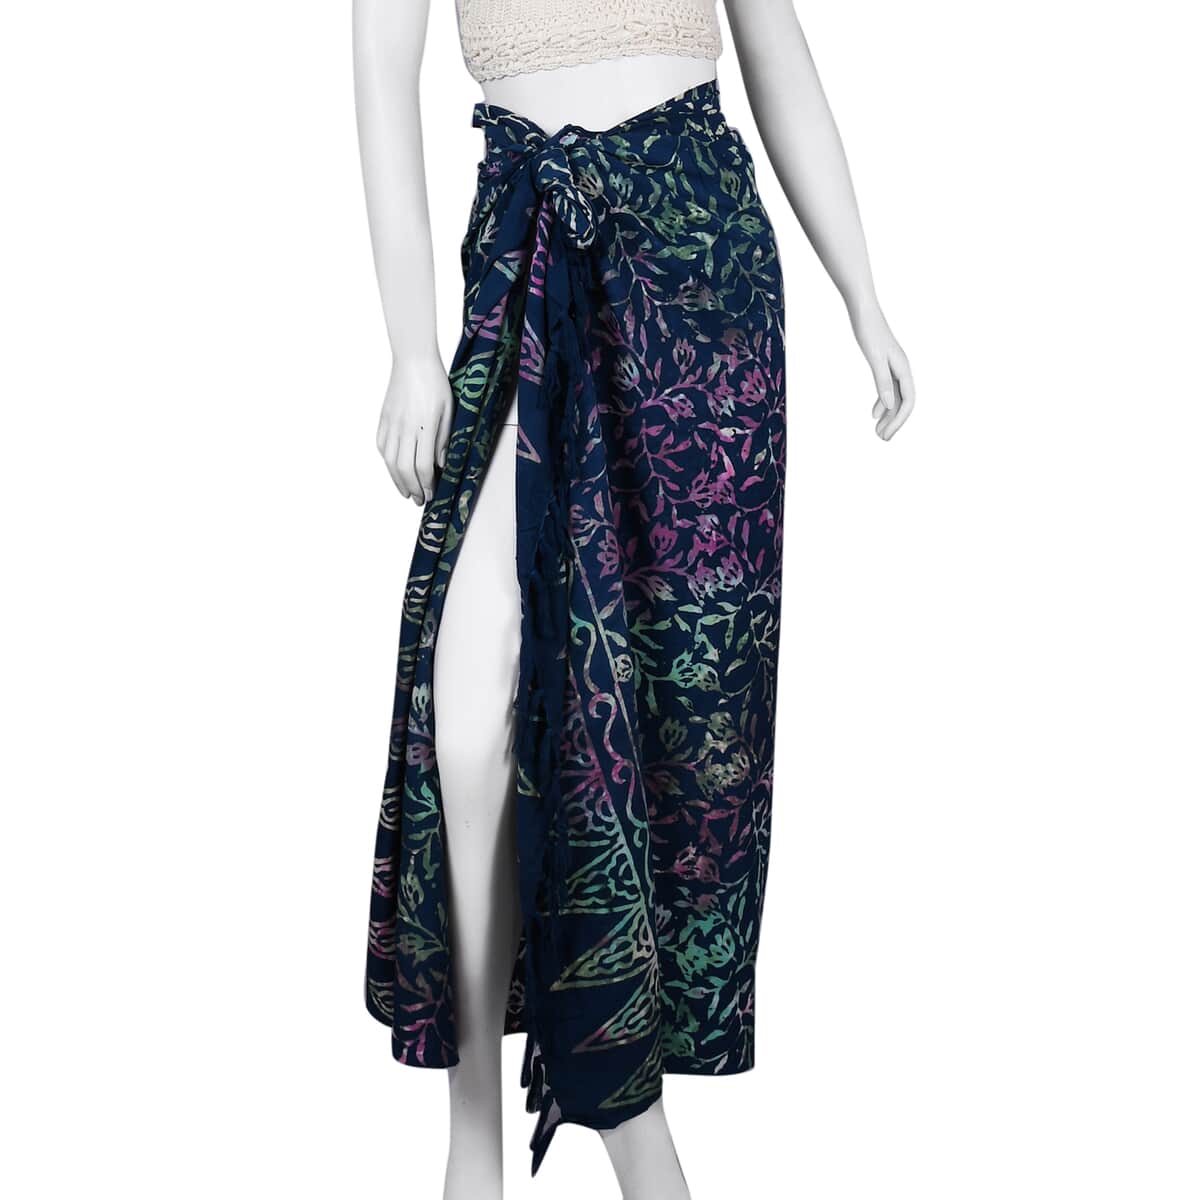 Handmade Dark Grey Floral Motif Pattern 100% Rayon Sarong | Women's Saron Wrap | Sarong Skirt | Beach Sarong Cover Up image number 1